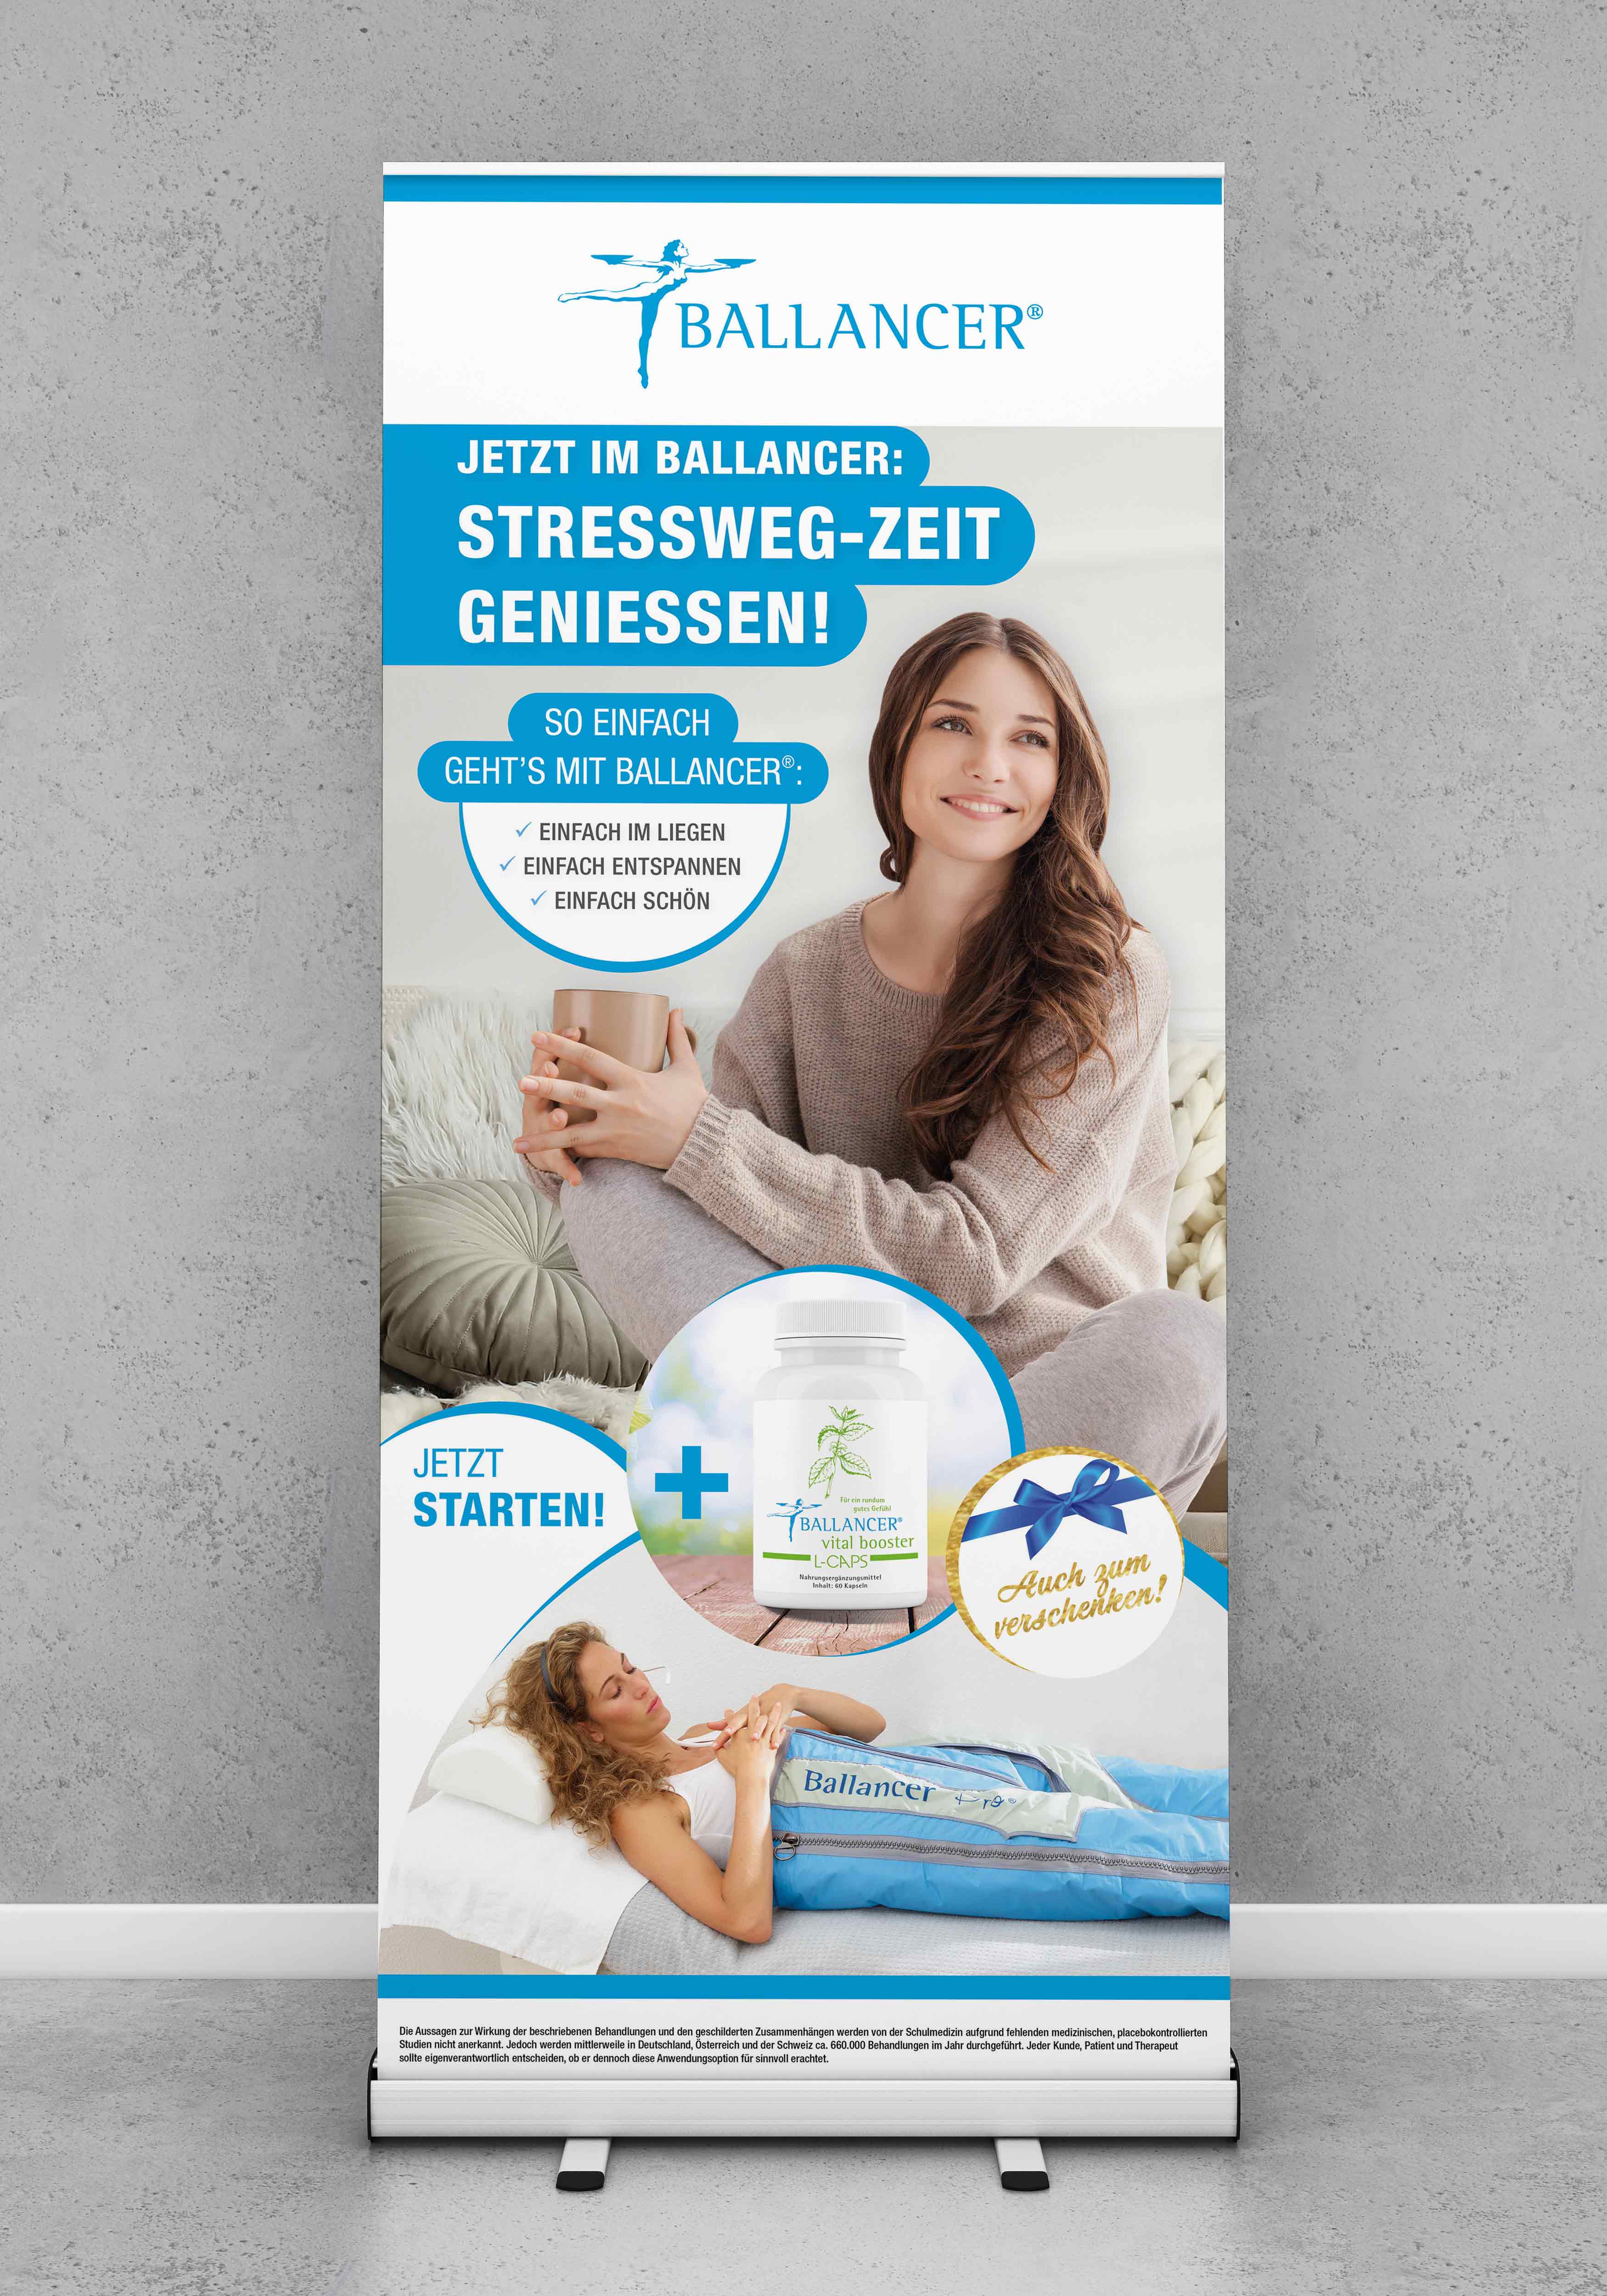 Roll-Up Kampagne "Stressweg-Zeit genießen"